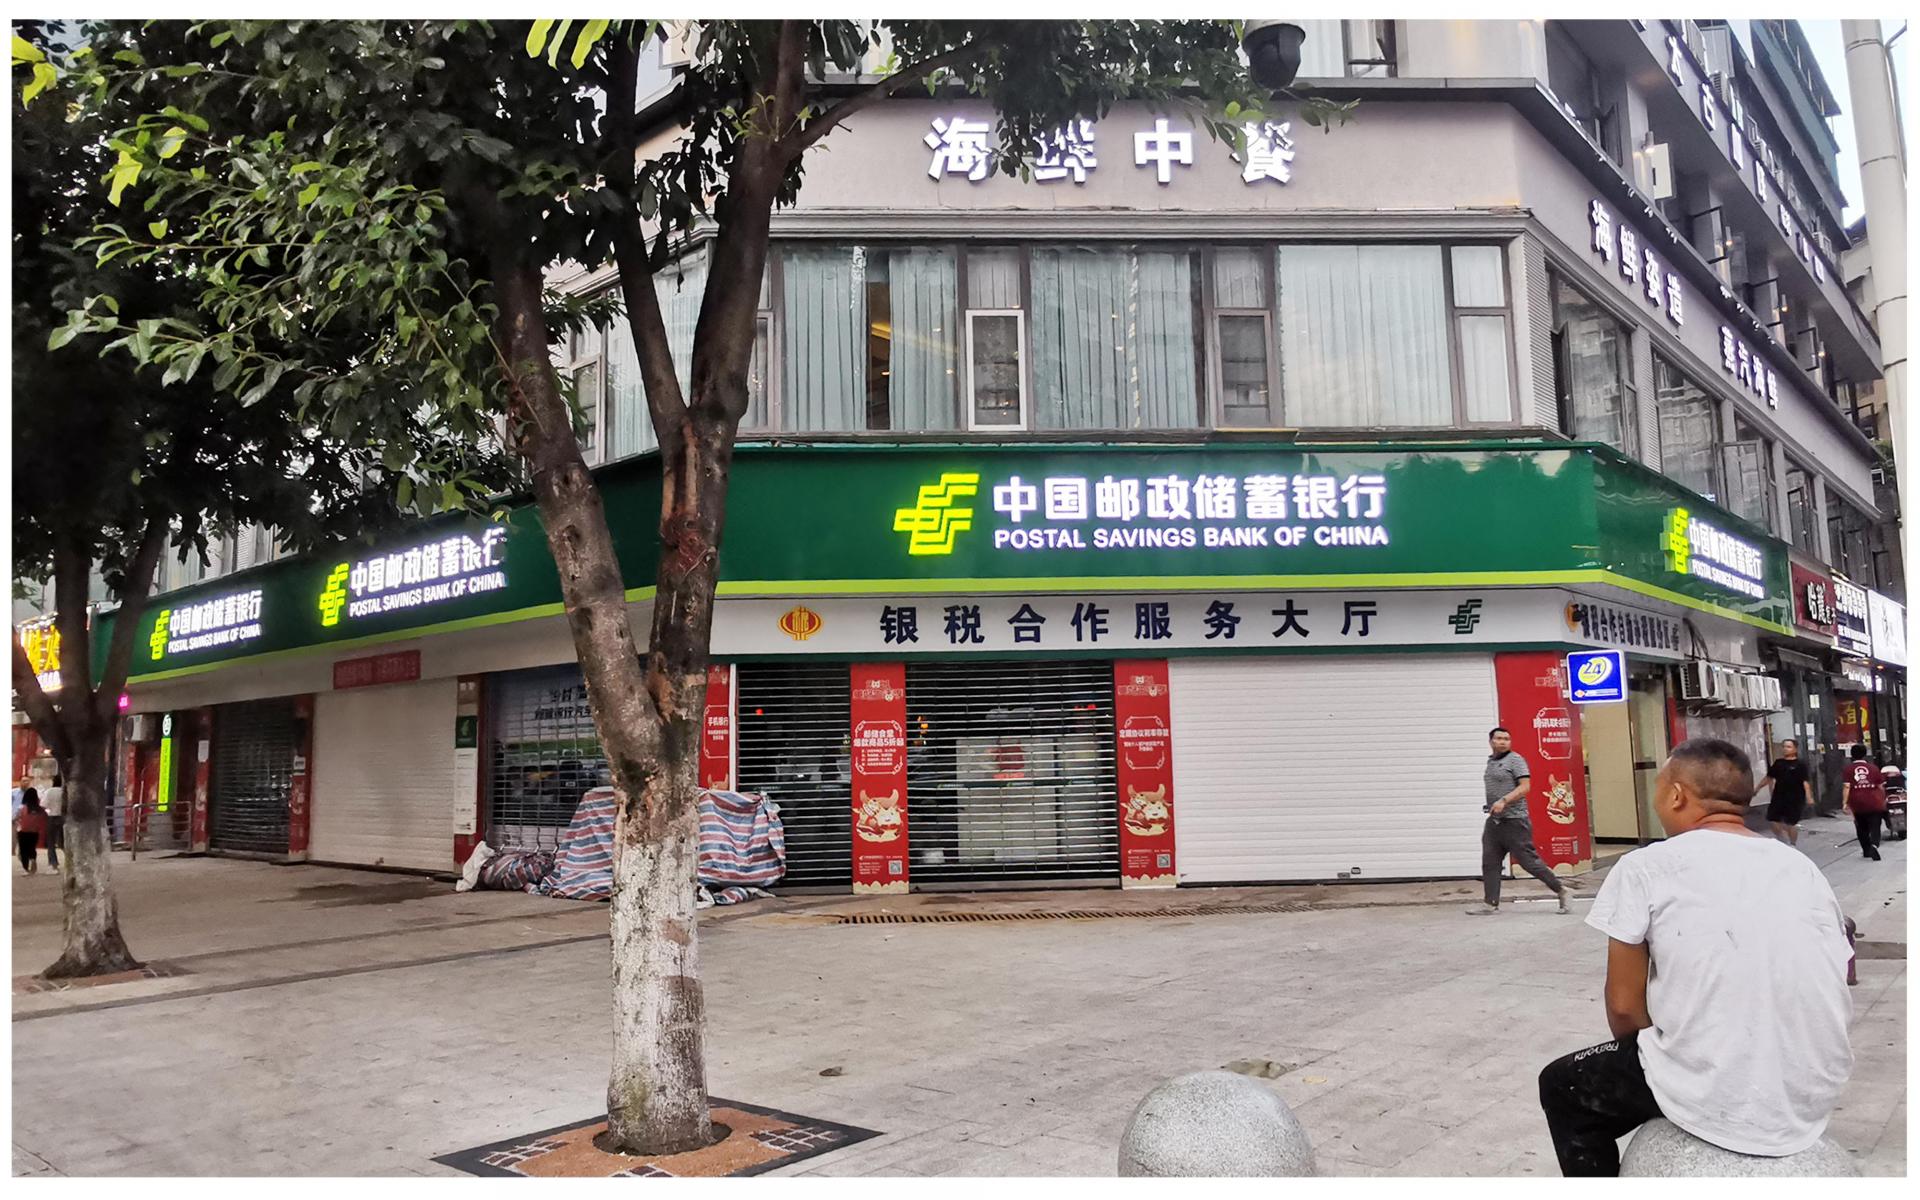 中国邮政储蓄银行门楣